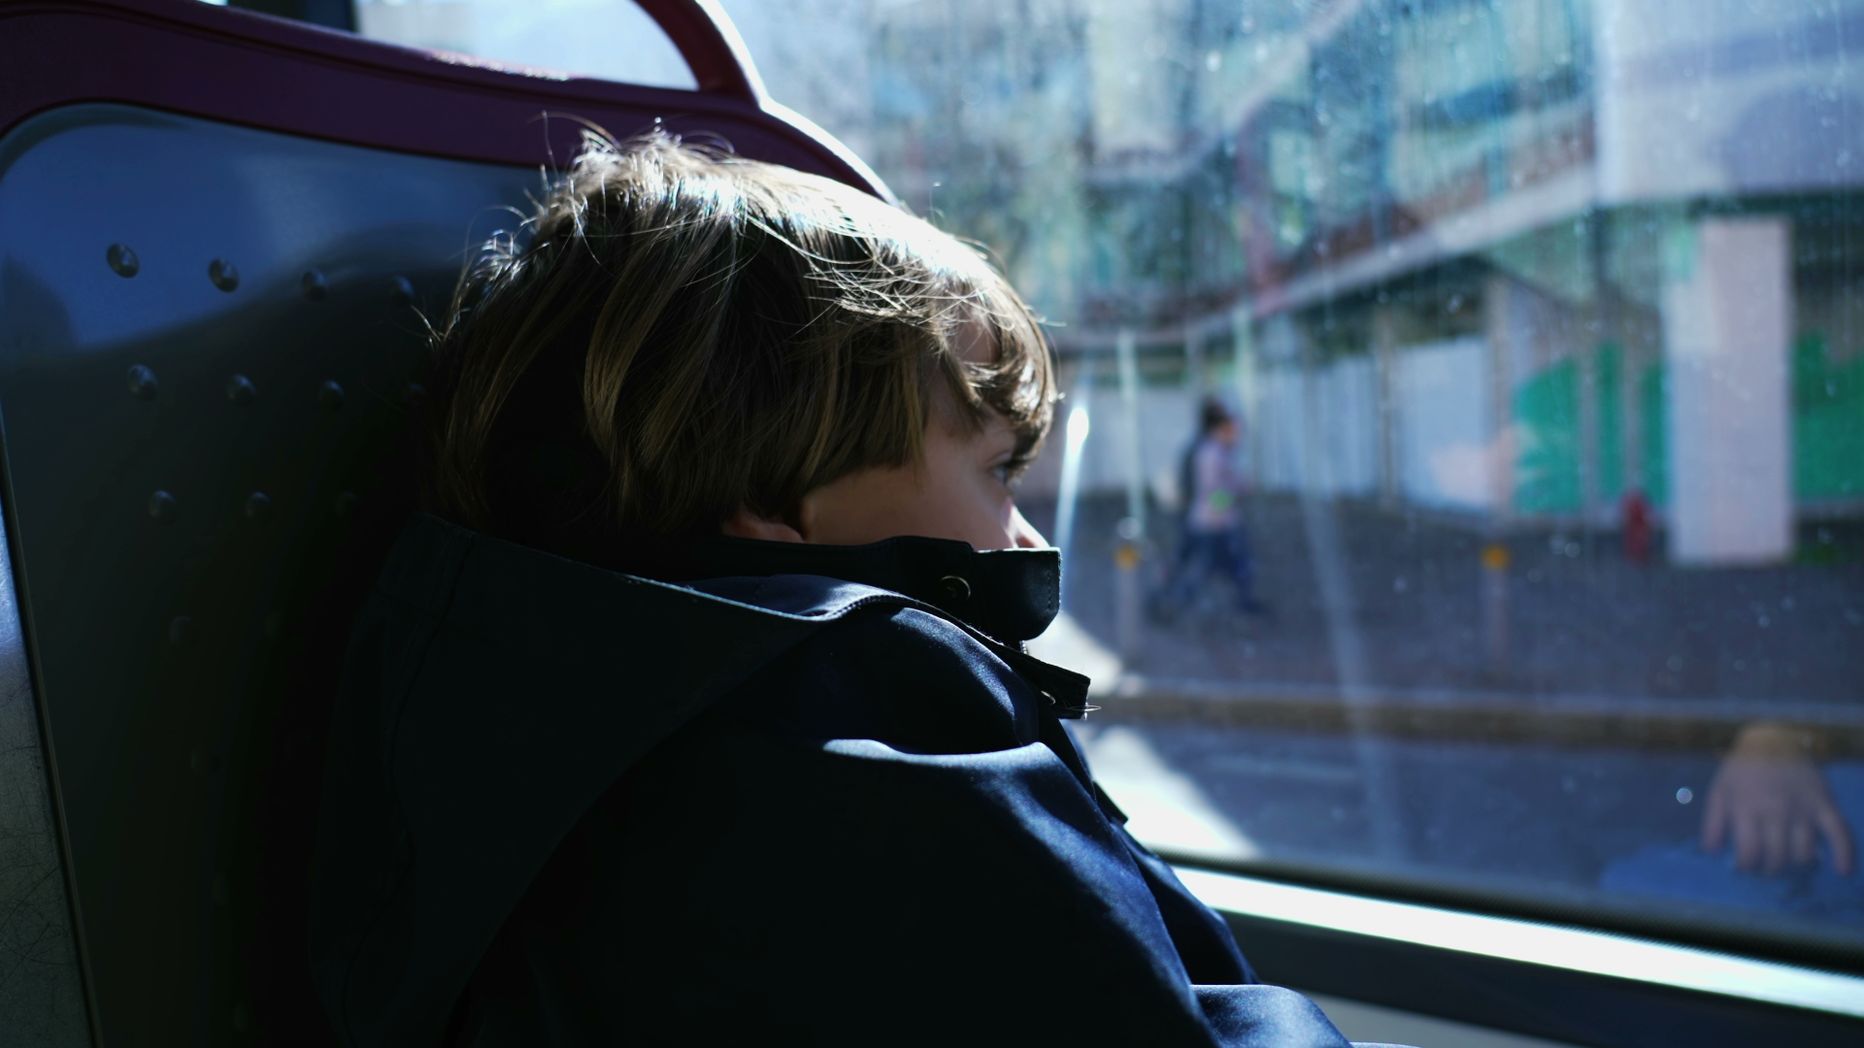 Ребенок в общественном транспорте. Иллюстративное фото